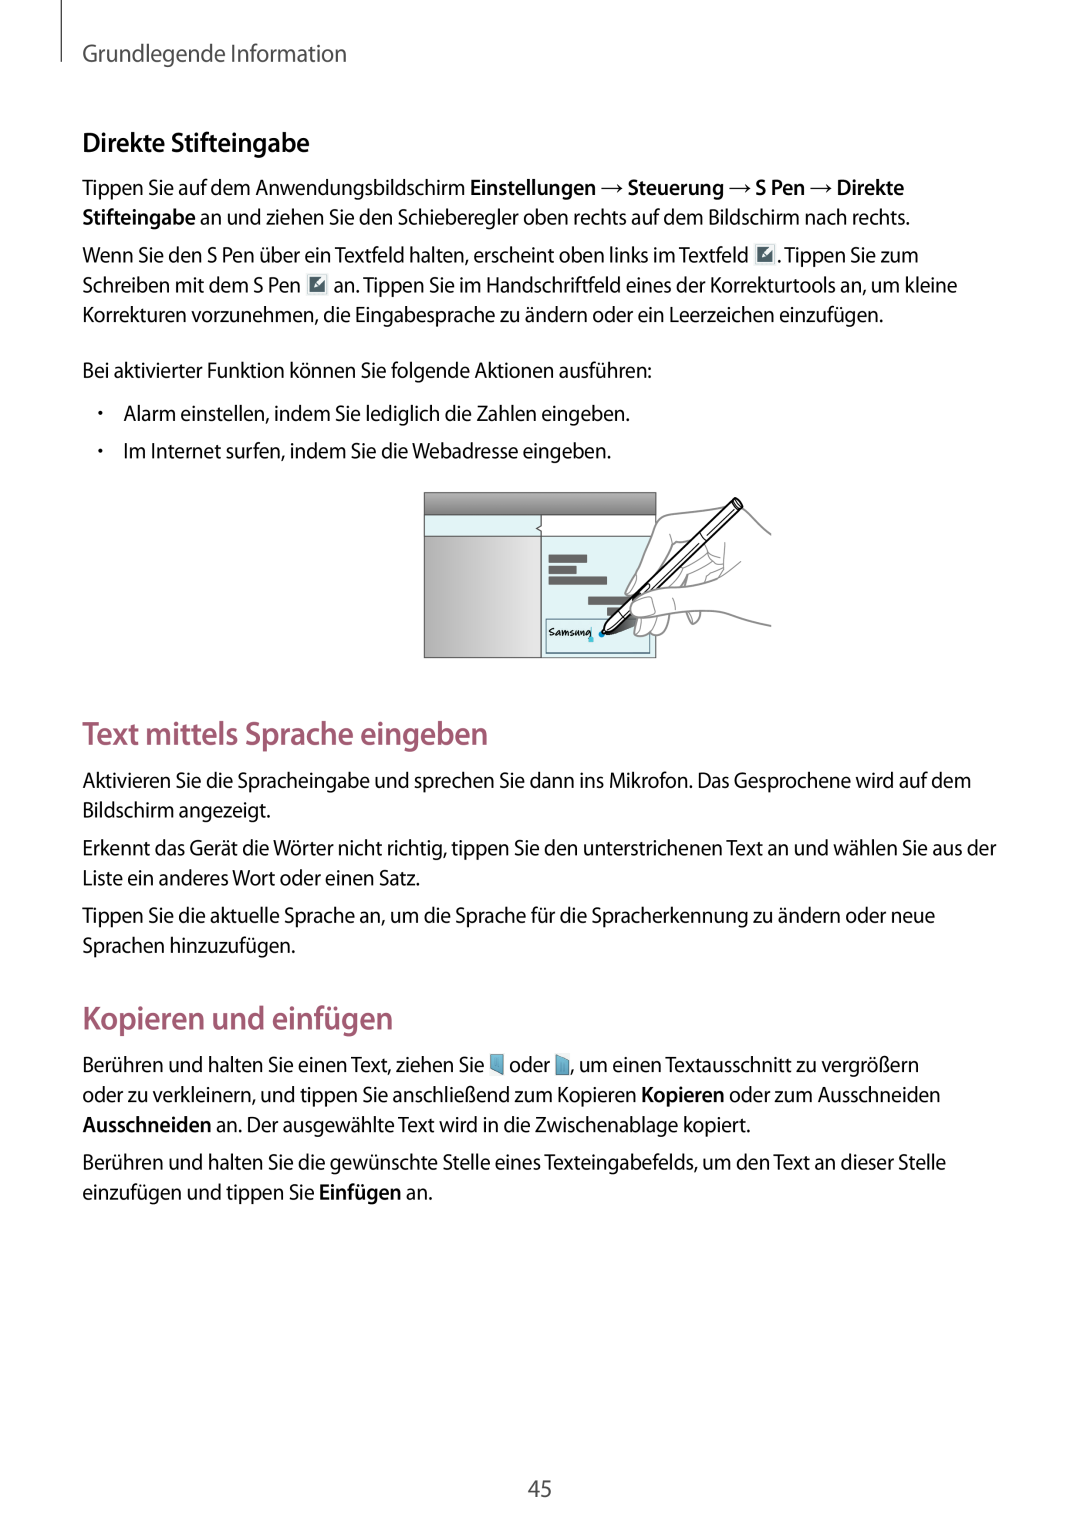 Samsung SM-P9000ZKATUR, SM-P9000ZWAATO manual Text mittels Sprache eingeben, Kopieren und einfügen, Direkte Stifteingabe 